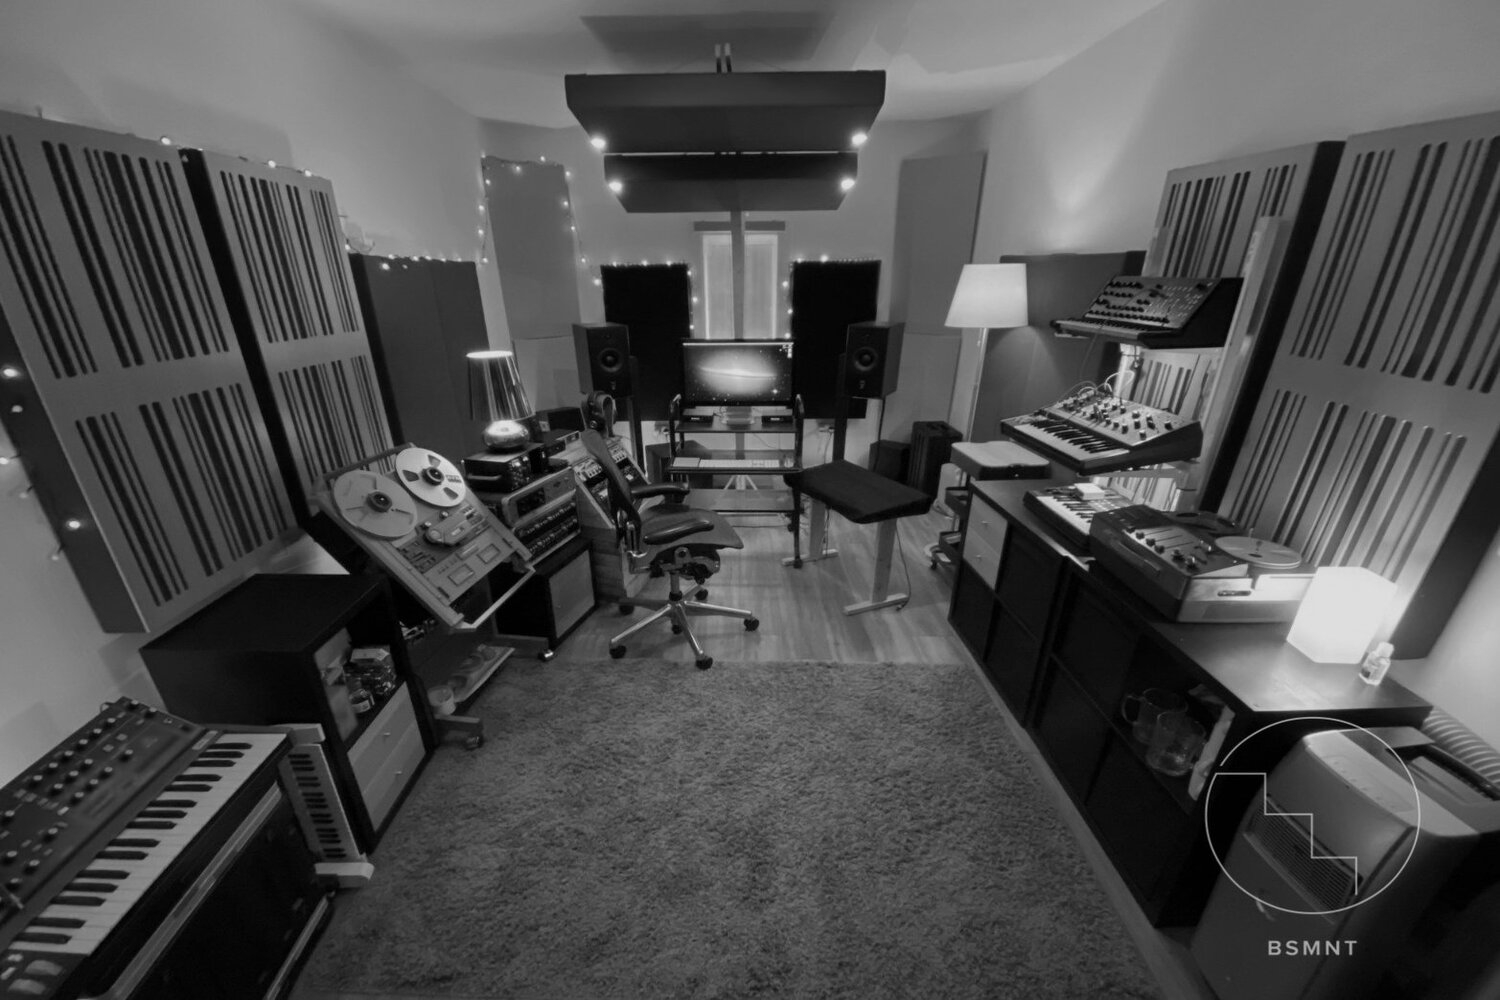 Studios to rent in Hackney, London